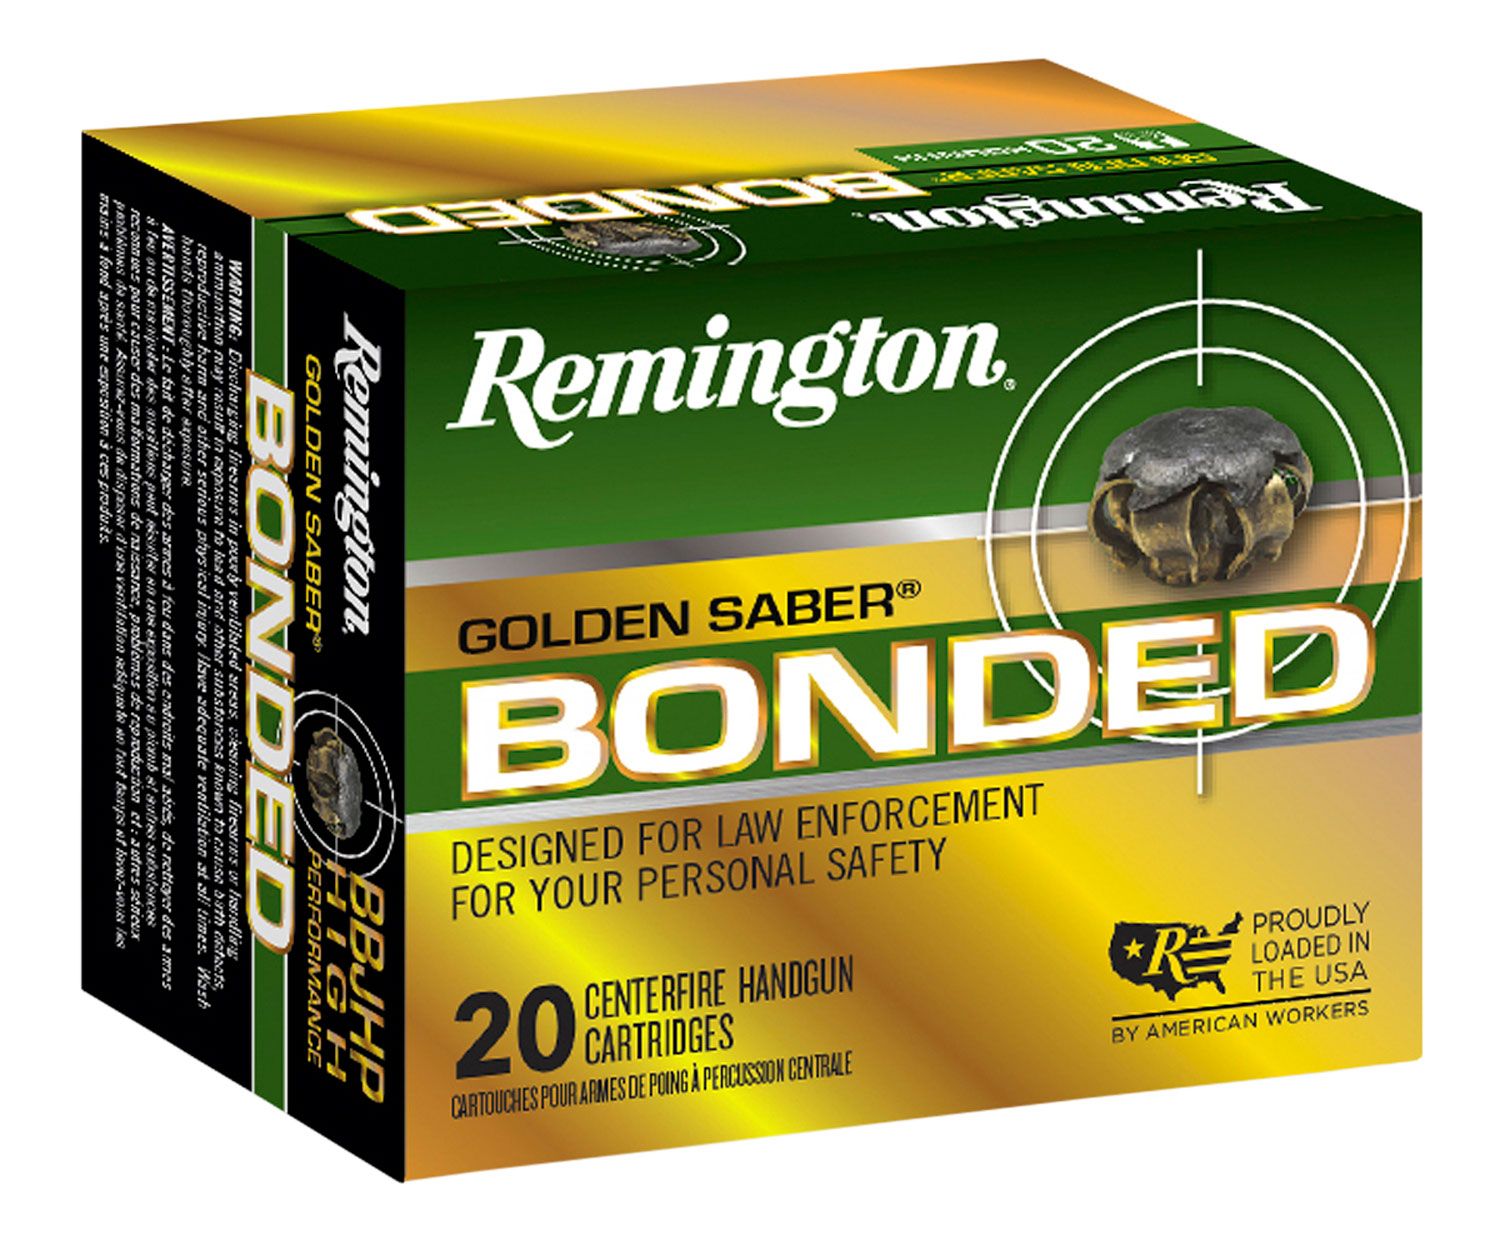 Remington Golden Saber Bonded Pistol Ammunition 29343, 9mm Luger, Brass Jacket Hollow Point, 147 gr, 990 fps, 20 Rd/Bx